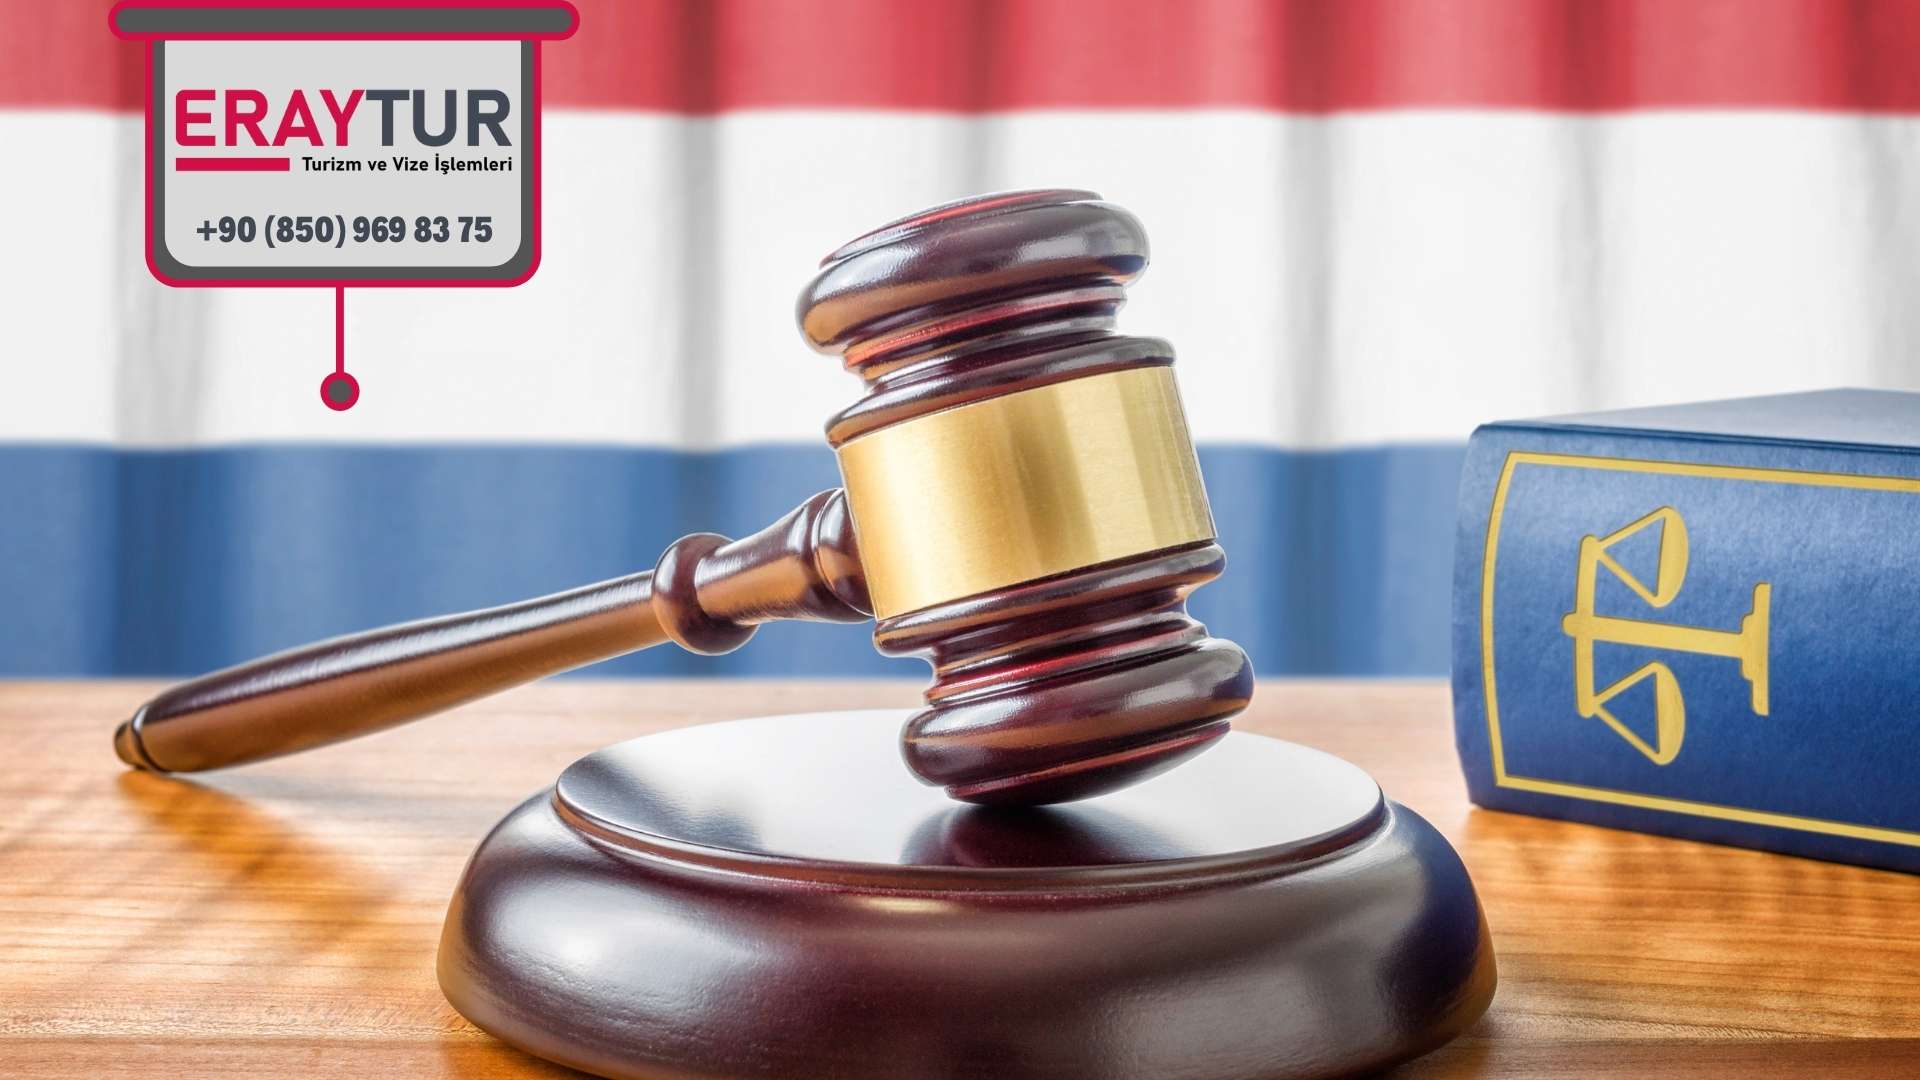 Hollanda Turistik Vize Eczacı/Avukat Evrakları